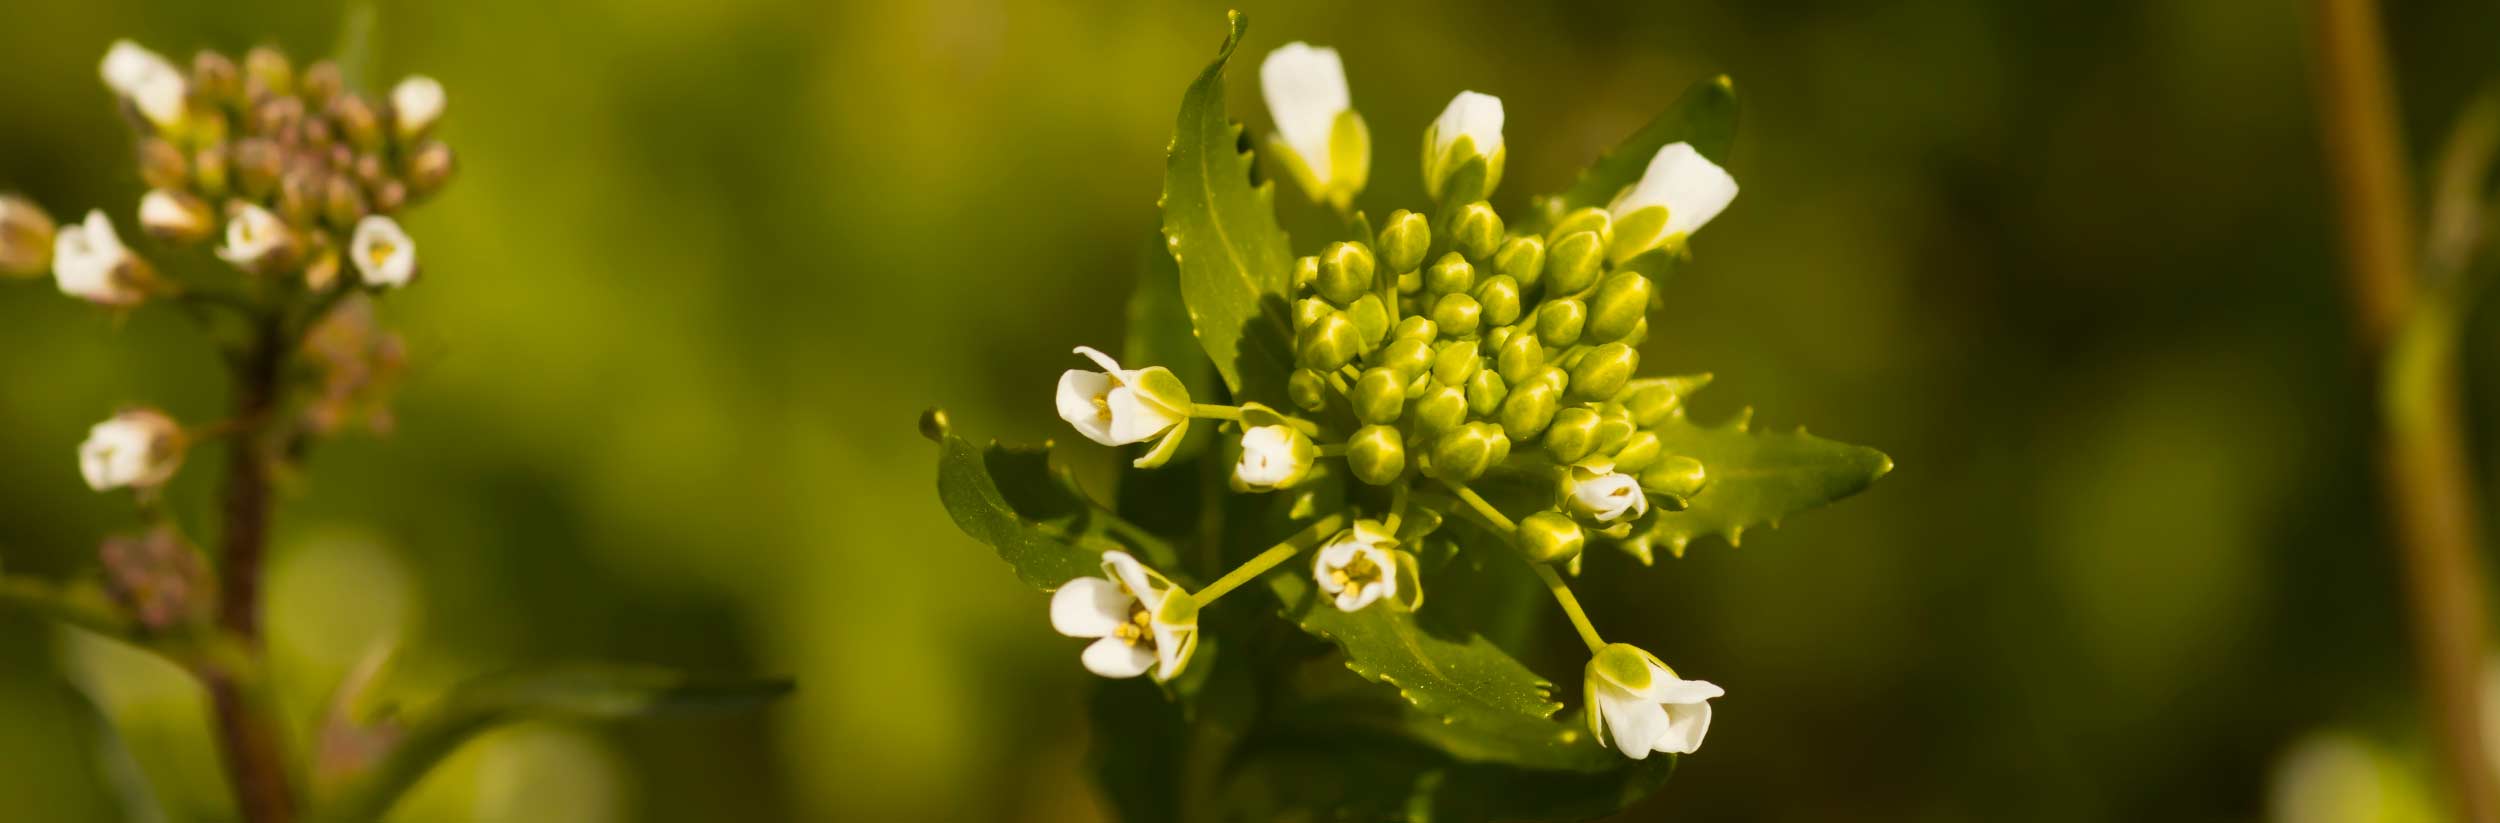 Shepherd's-purse - Capsella bursa-pastoris - Brassicaceae:… | Flickr